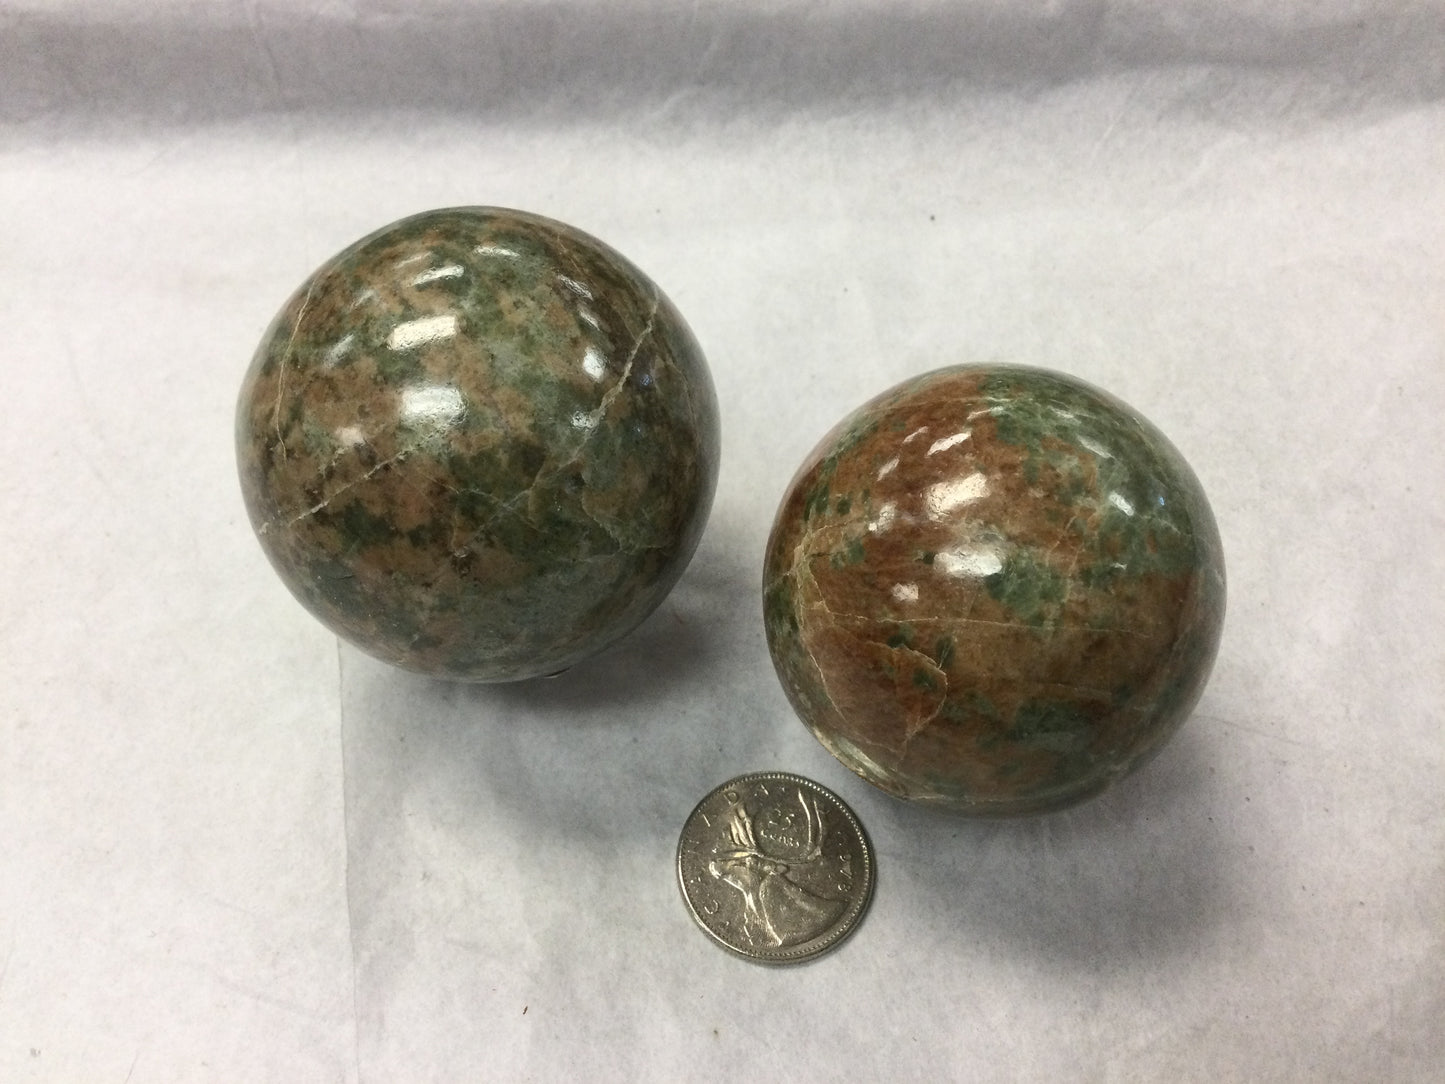 Diopside & Garnet Crystal Spheres